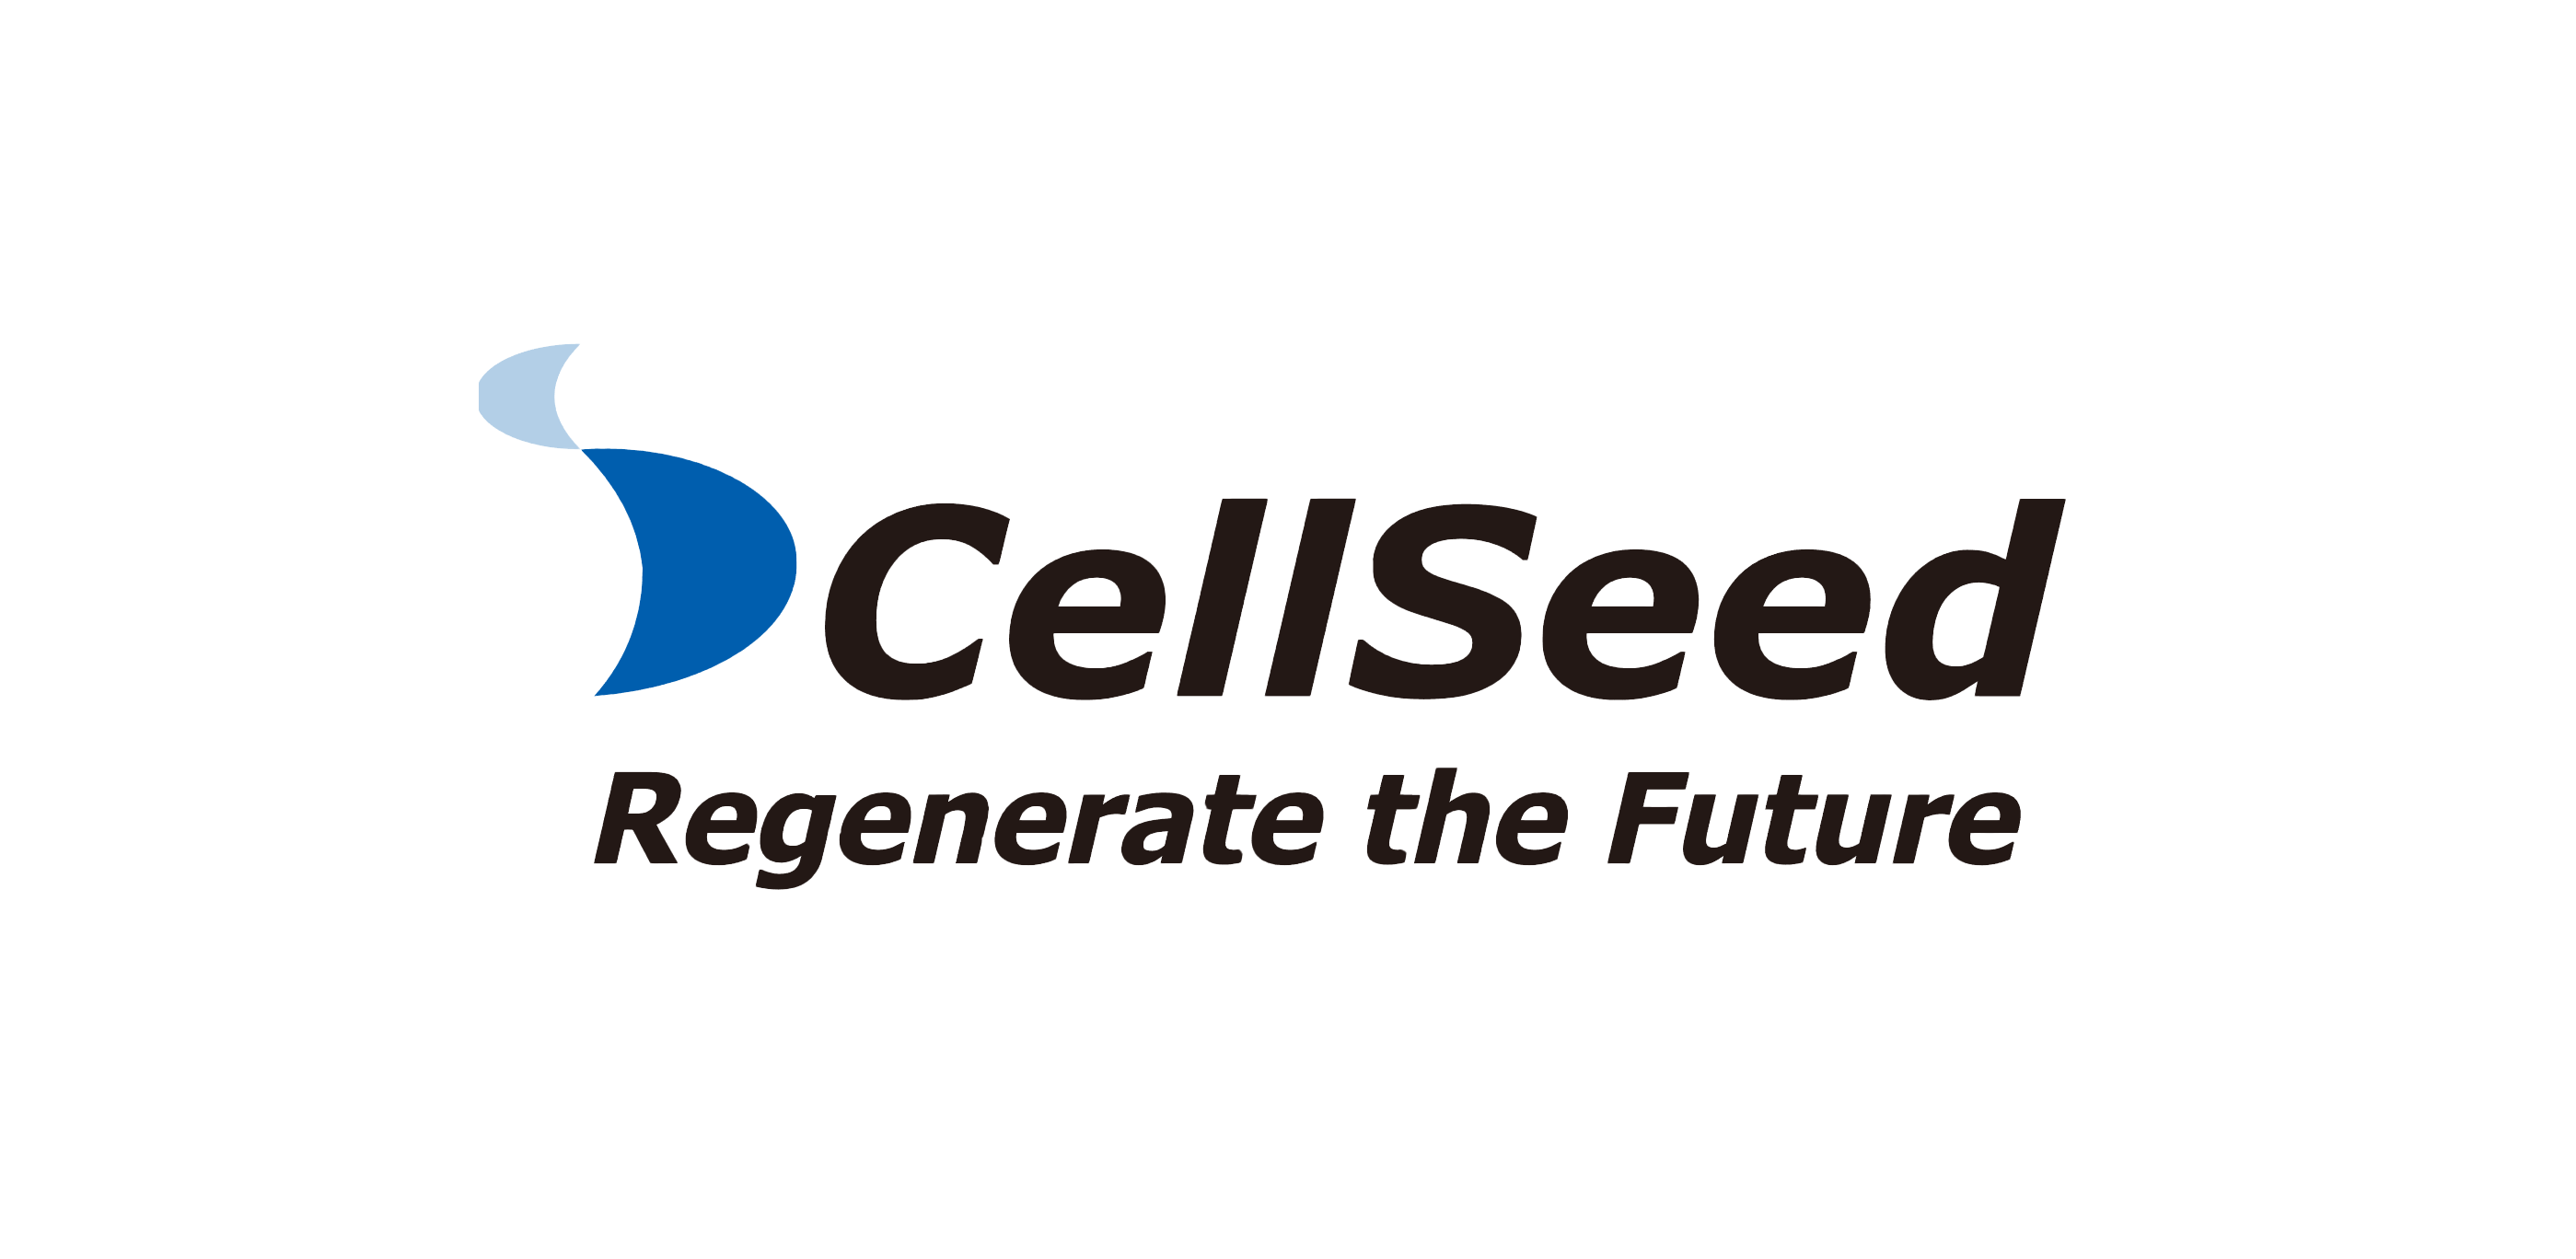 CellSeed